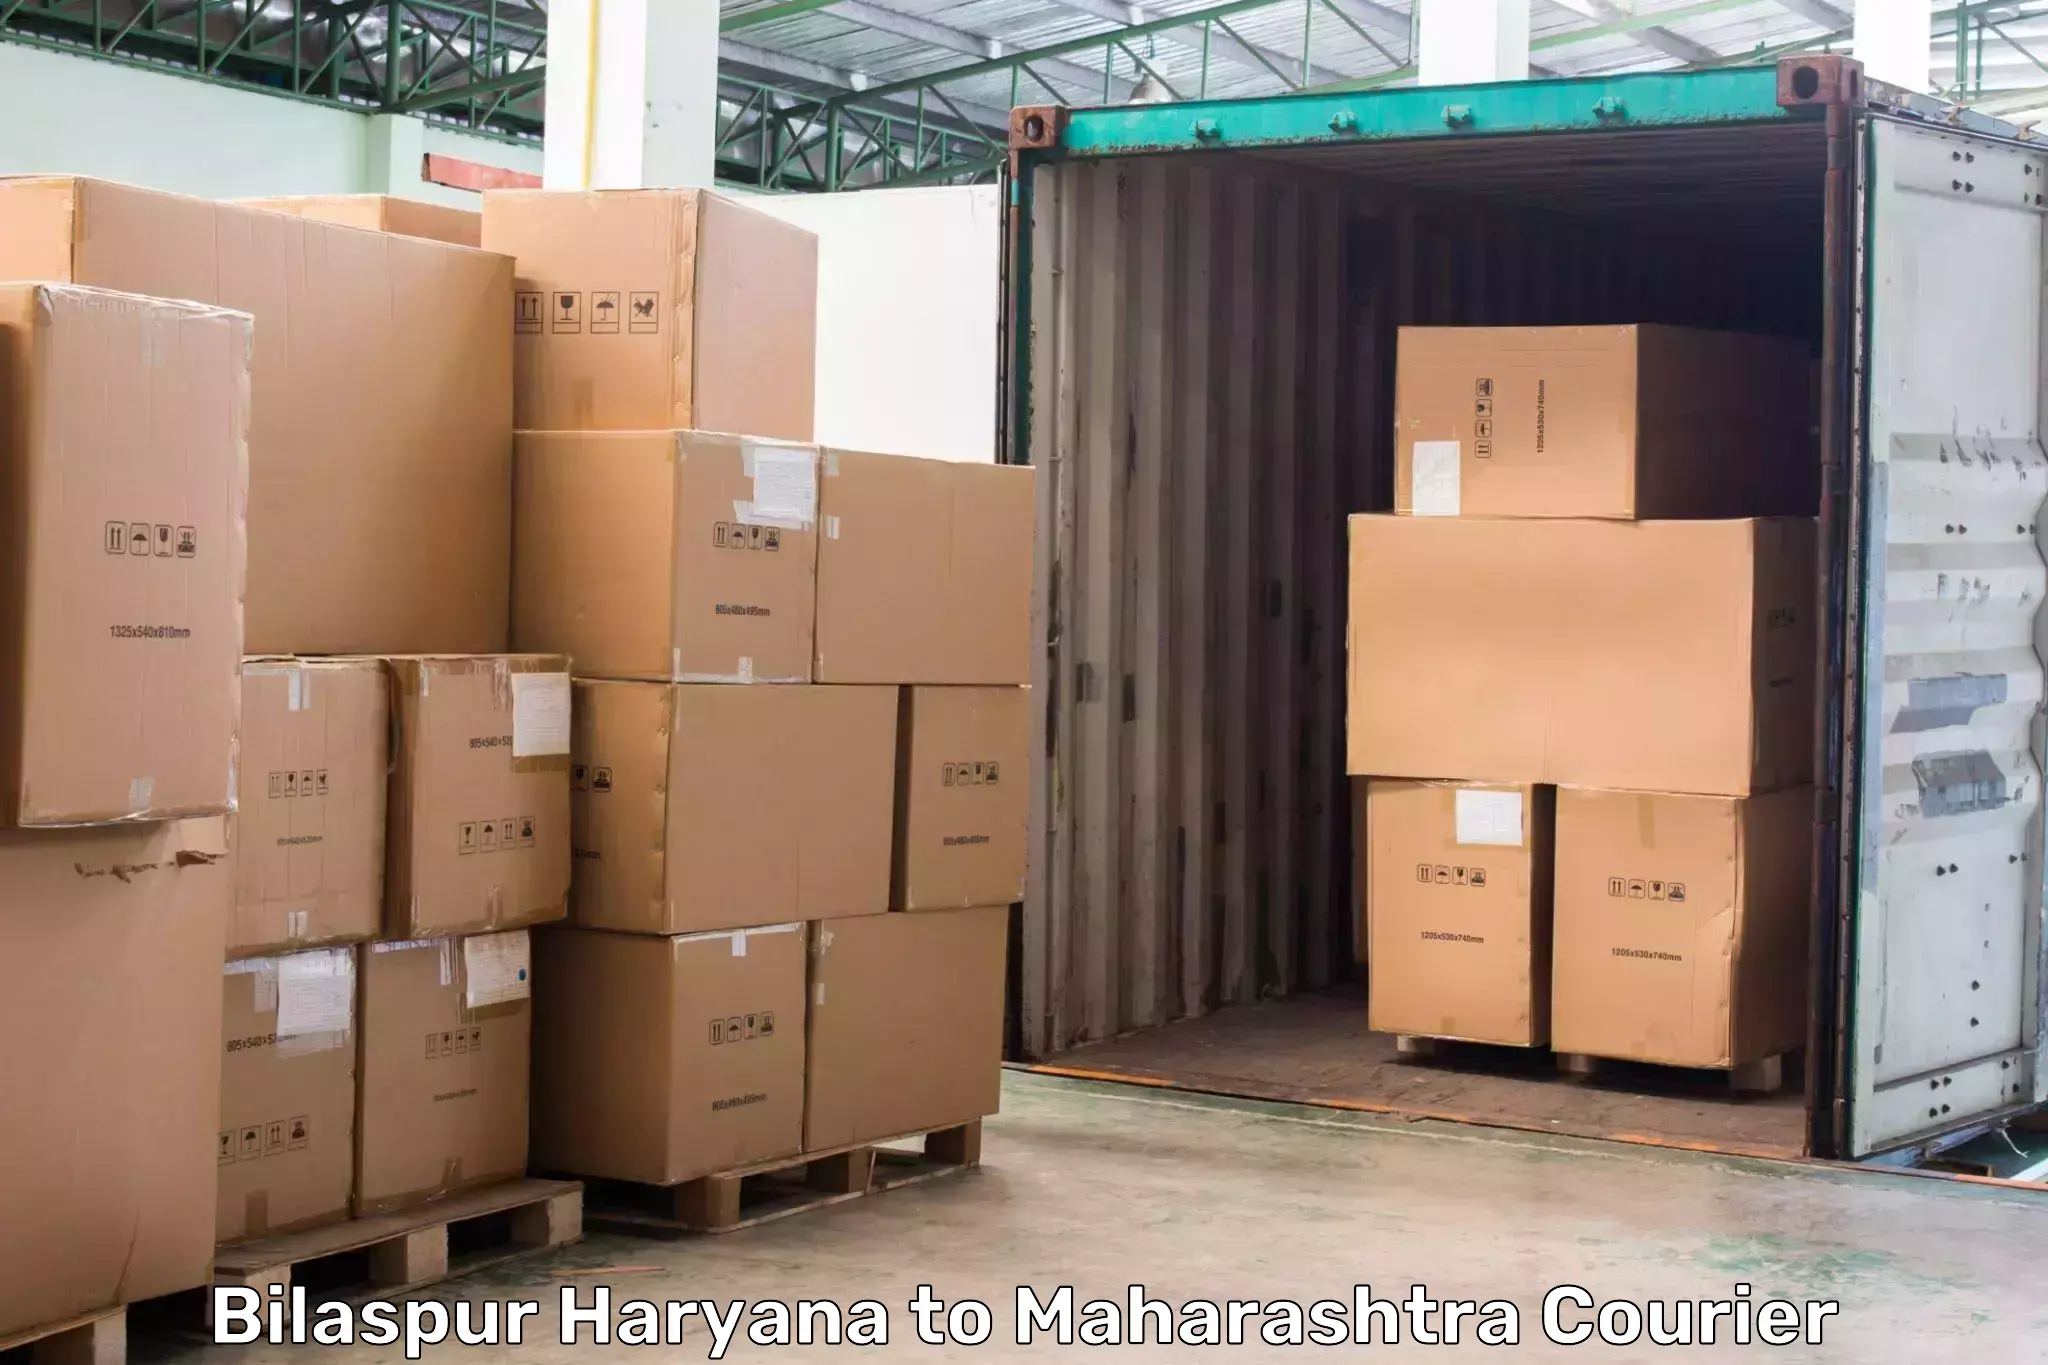 Courier app Bilaspur Haryana to Daryapur